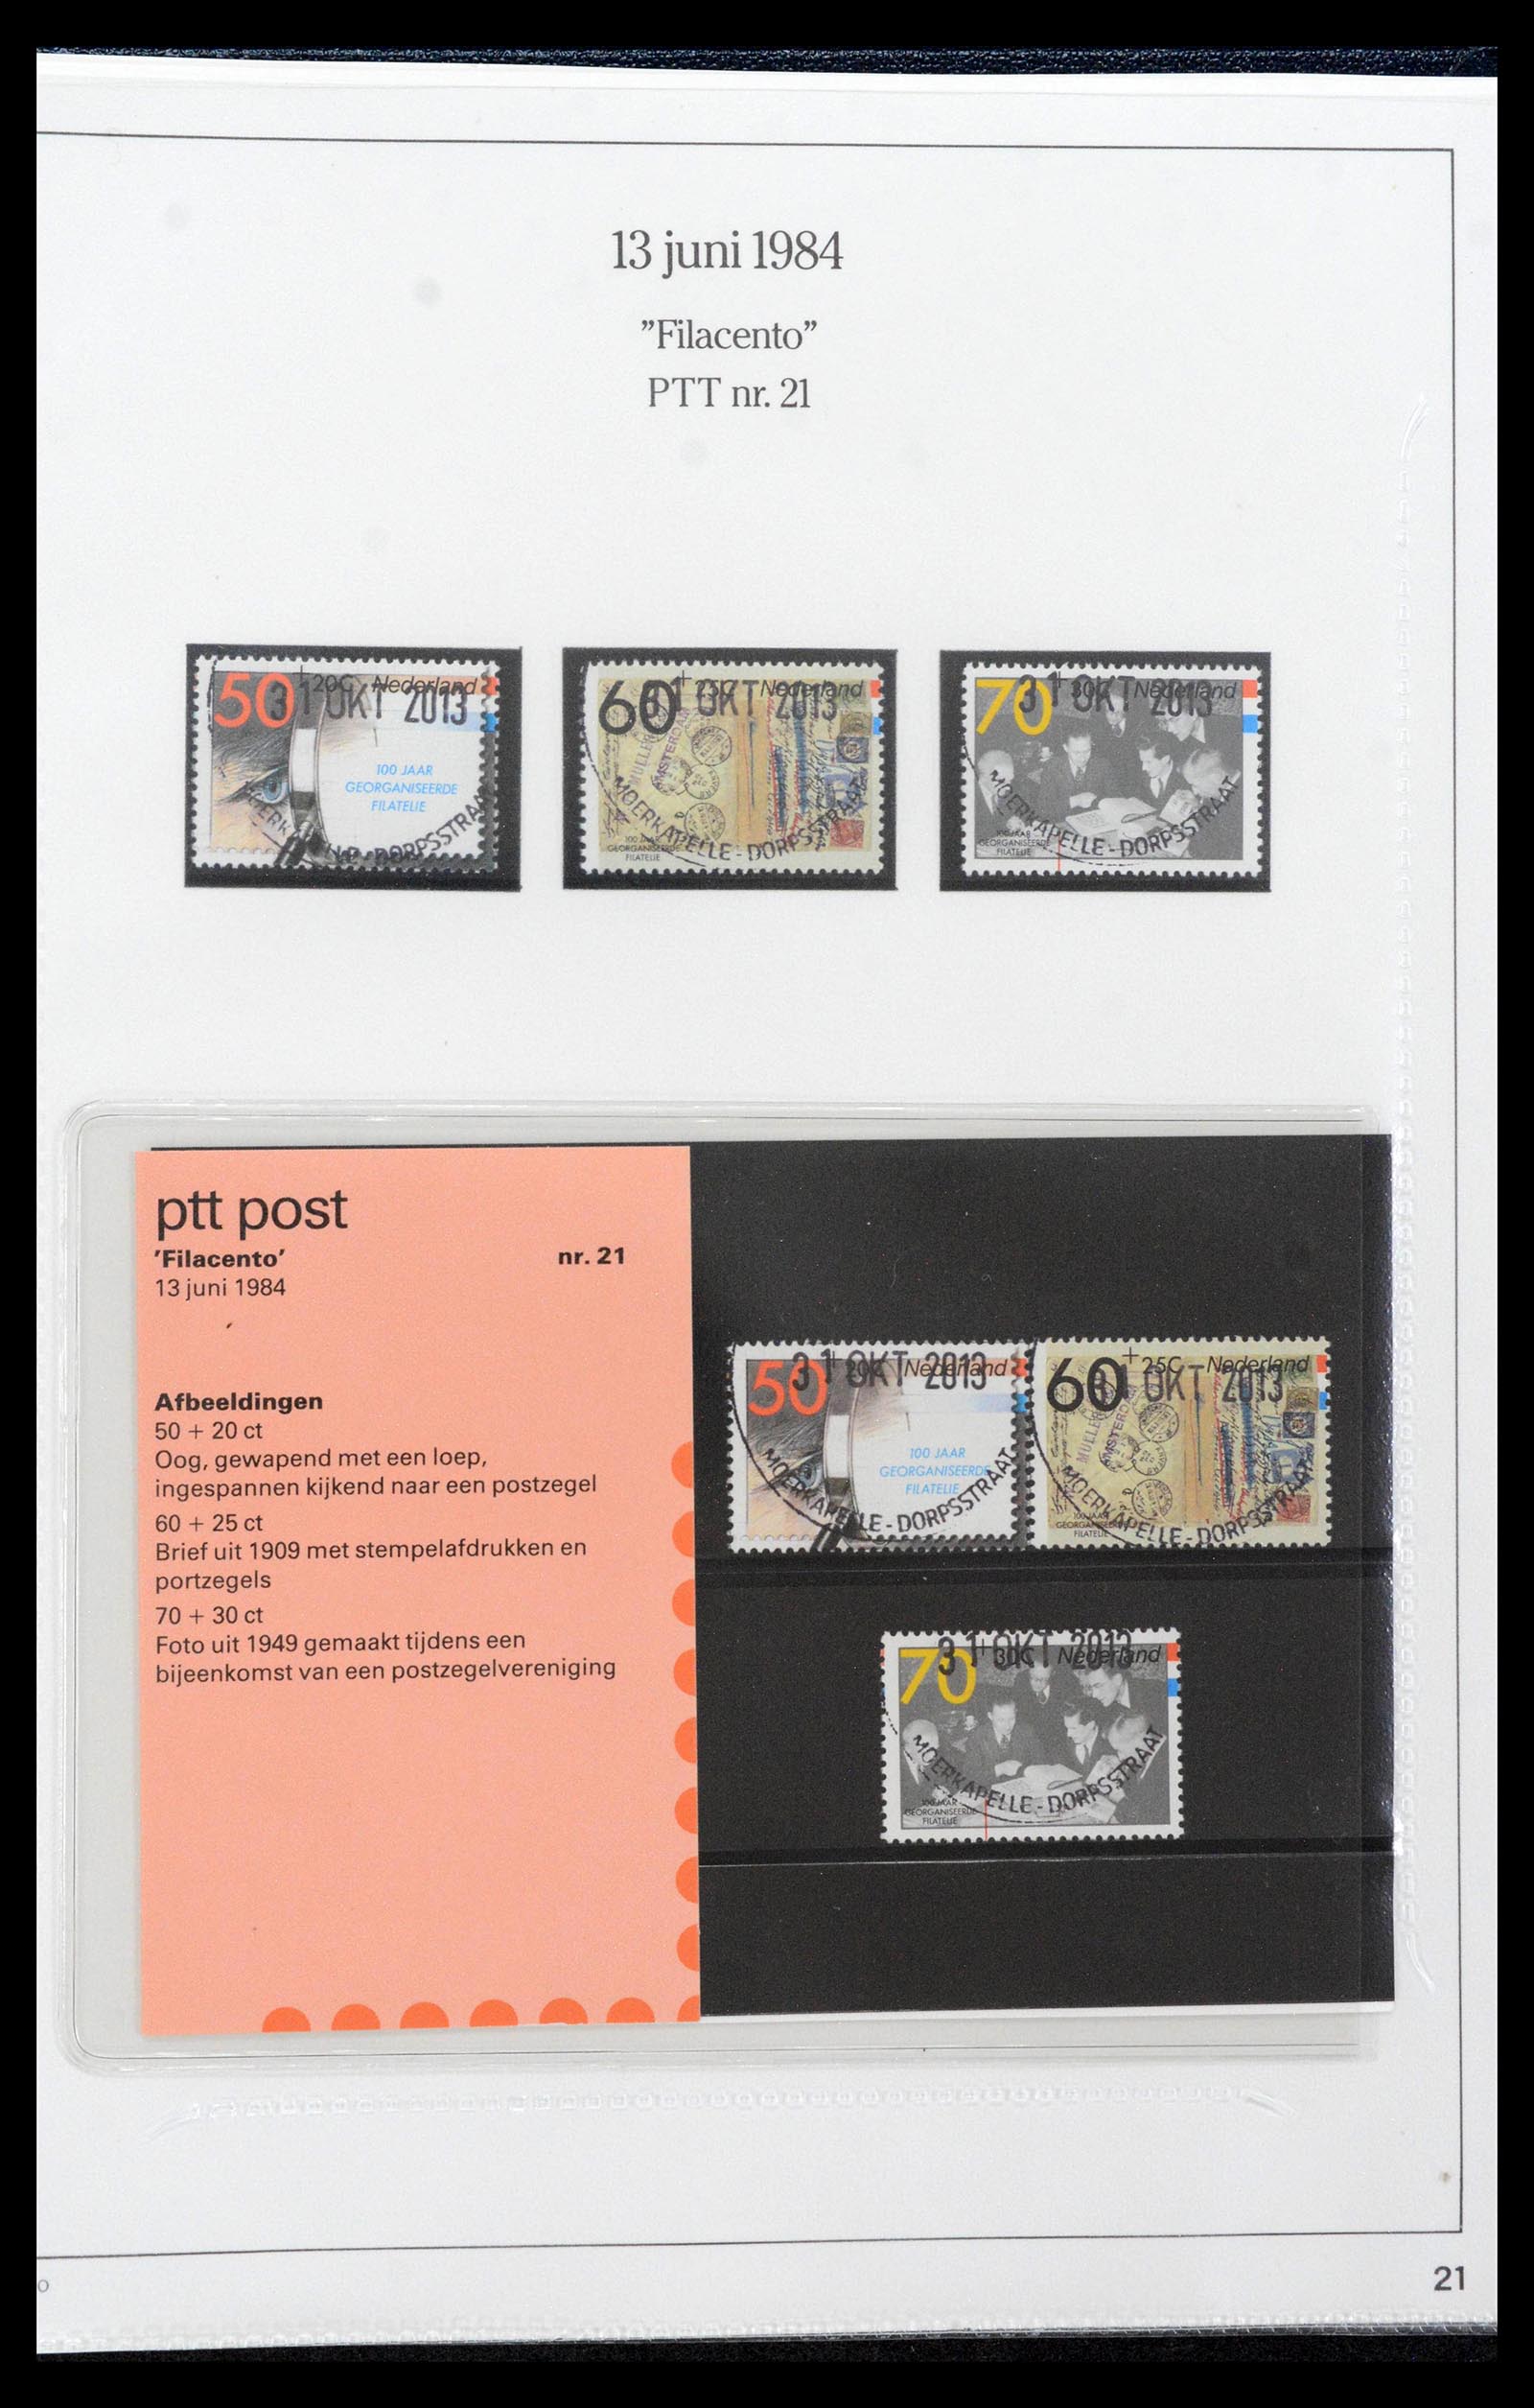 39121 0021 - Stamp collection 39121 Netherlands presentationpacks 1982-2001.